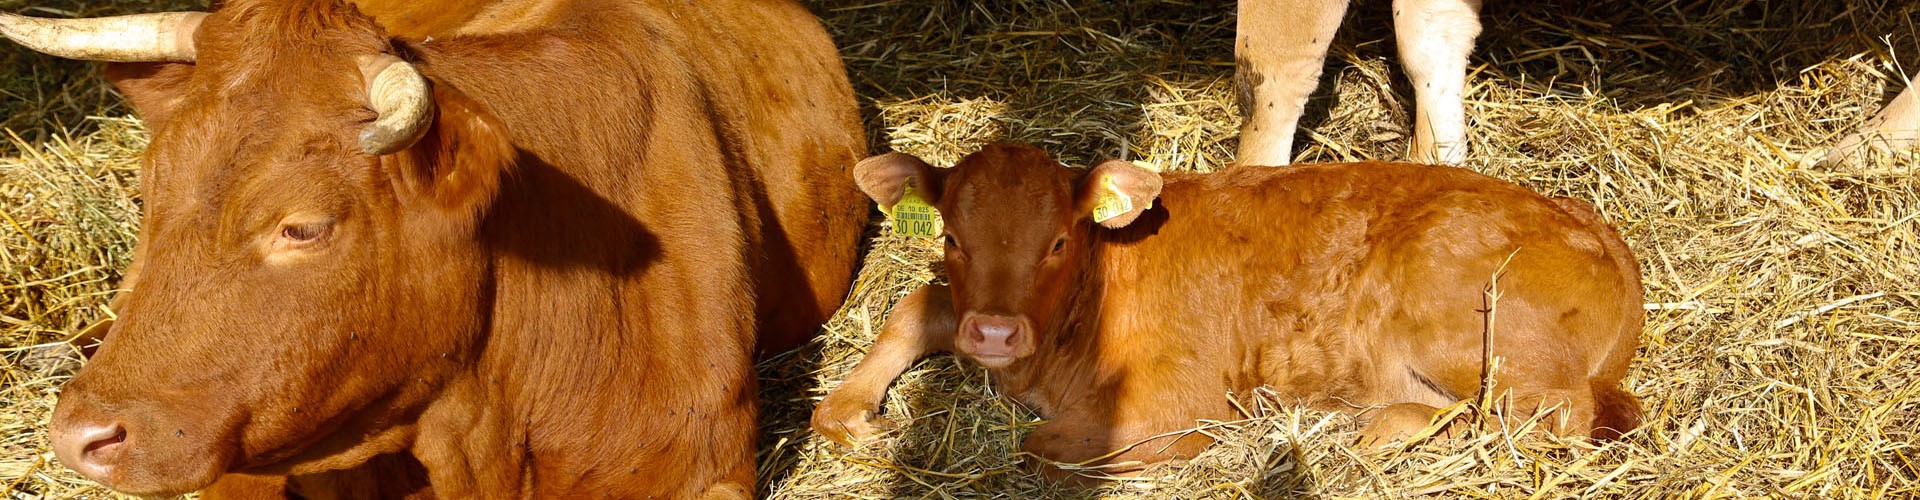 Bio vom Bauernhof : Fleisch, Aufschnitt, Lebensmittel und Bio-Produkte